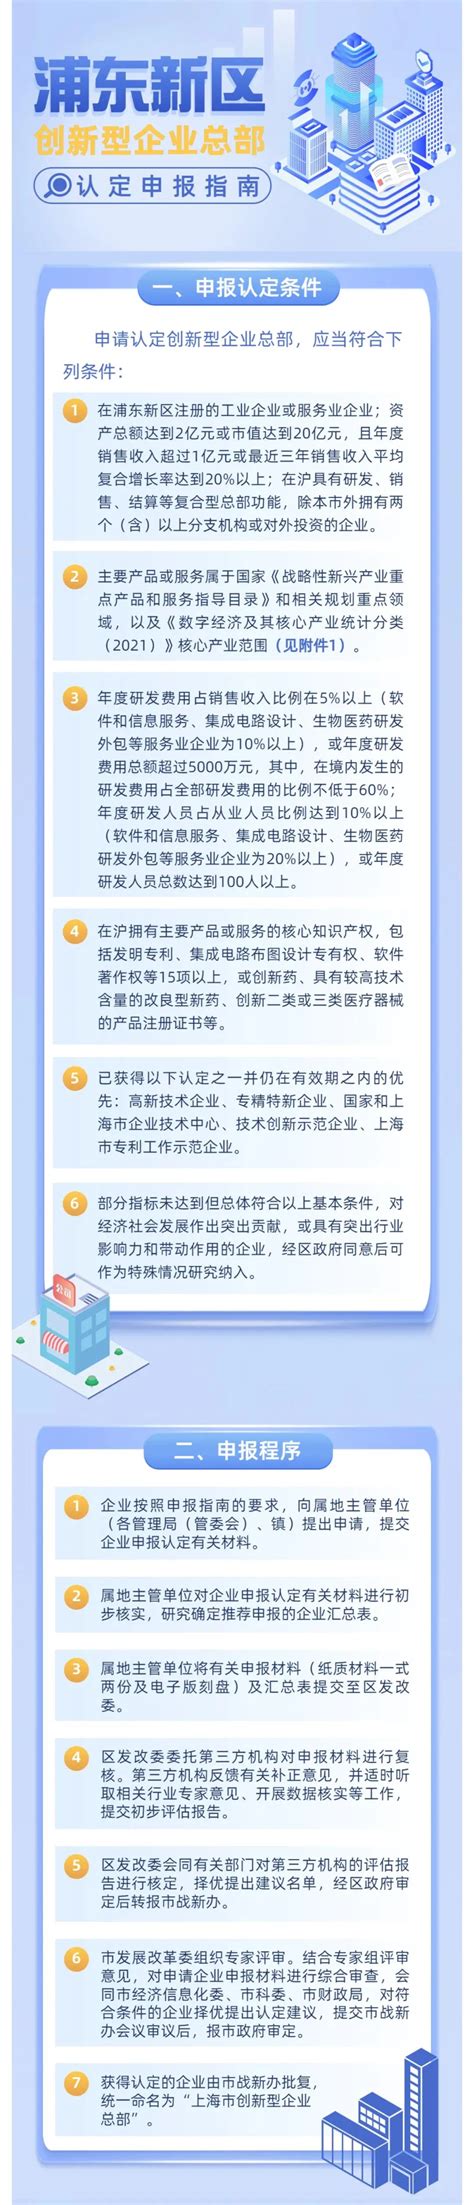 2021年度浦东新区创新型孵化器毕业企业名单公示 - 知乎